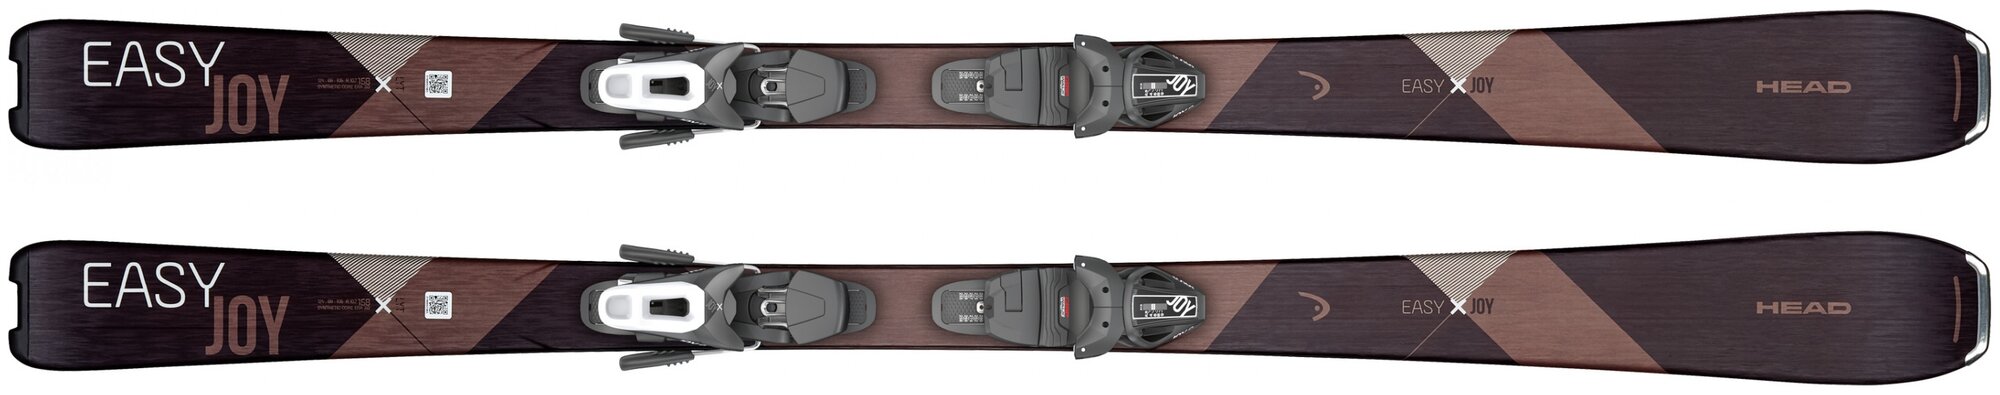 Горные лыжи Head Easy Joy SLR Joy Pro Black/White + SLR 7.5 Black/White (19/20) (153)